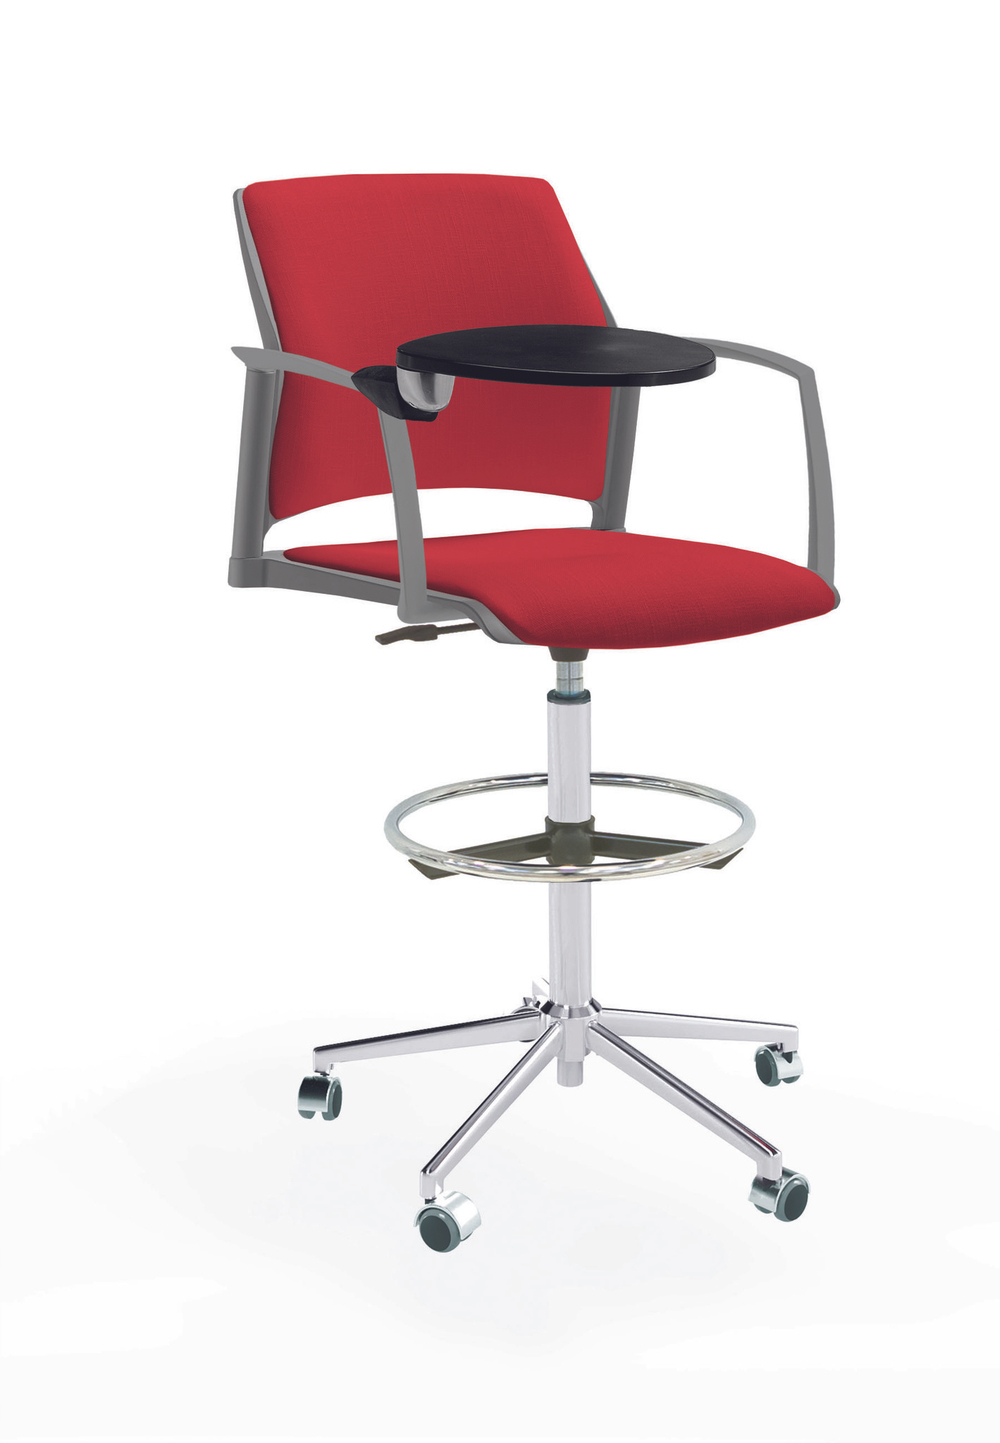 Кресло Rewind каркас хром, пластик серый, база стальная хромированная, с закрытыми подлокотниками и пюпитром, сиденье и спинка красные